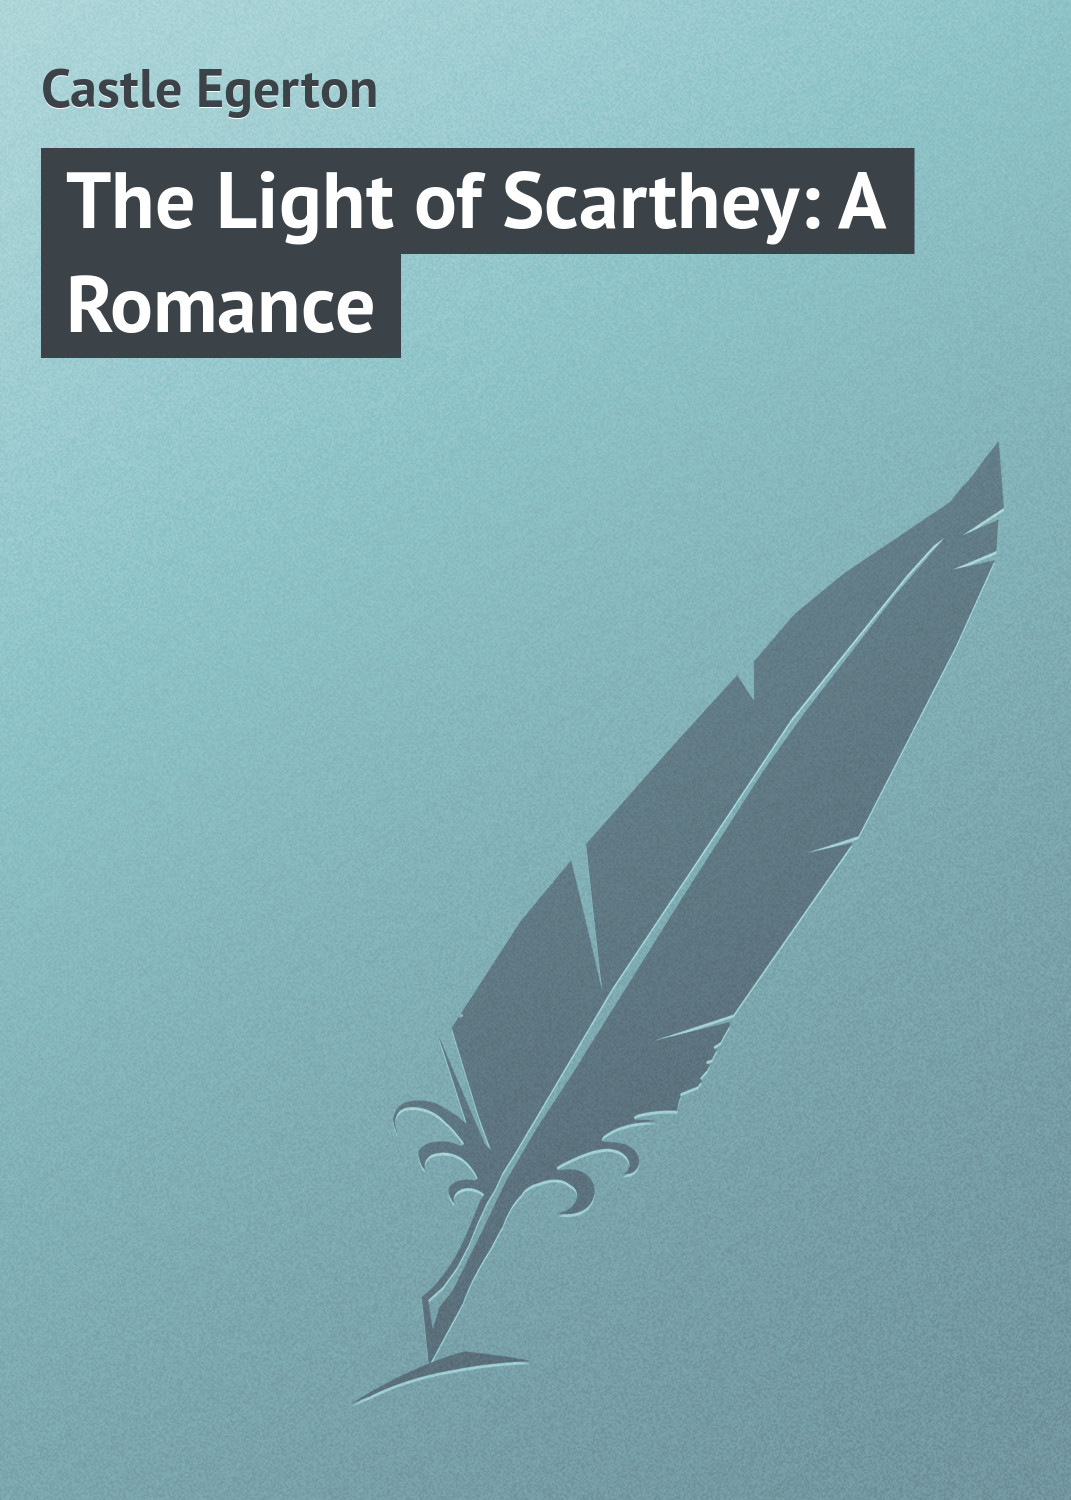 Книга The Light of Scarthey: A Romance из серии , созданная Egerton Castle, может относится к жанру Иностранные языки, Зарубежная классика, Зарубежные любовные романы. Стоимость электронной книги The Light of Scarthey: A Romance с идентификатором 23151787 составляет 5.99 руб.